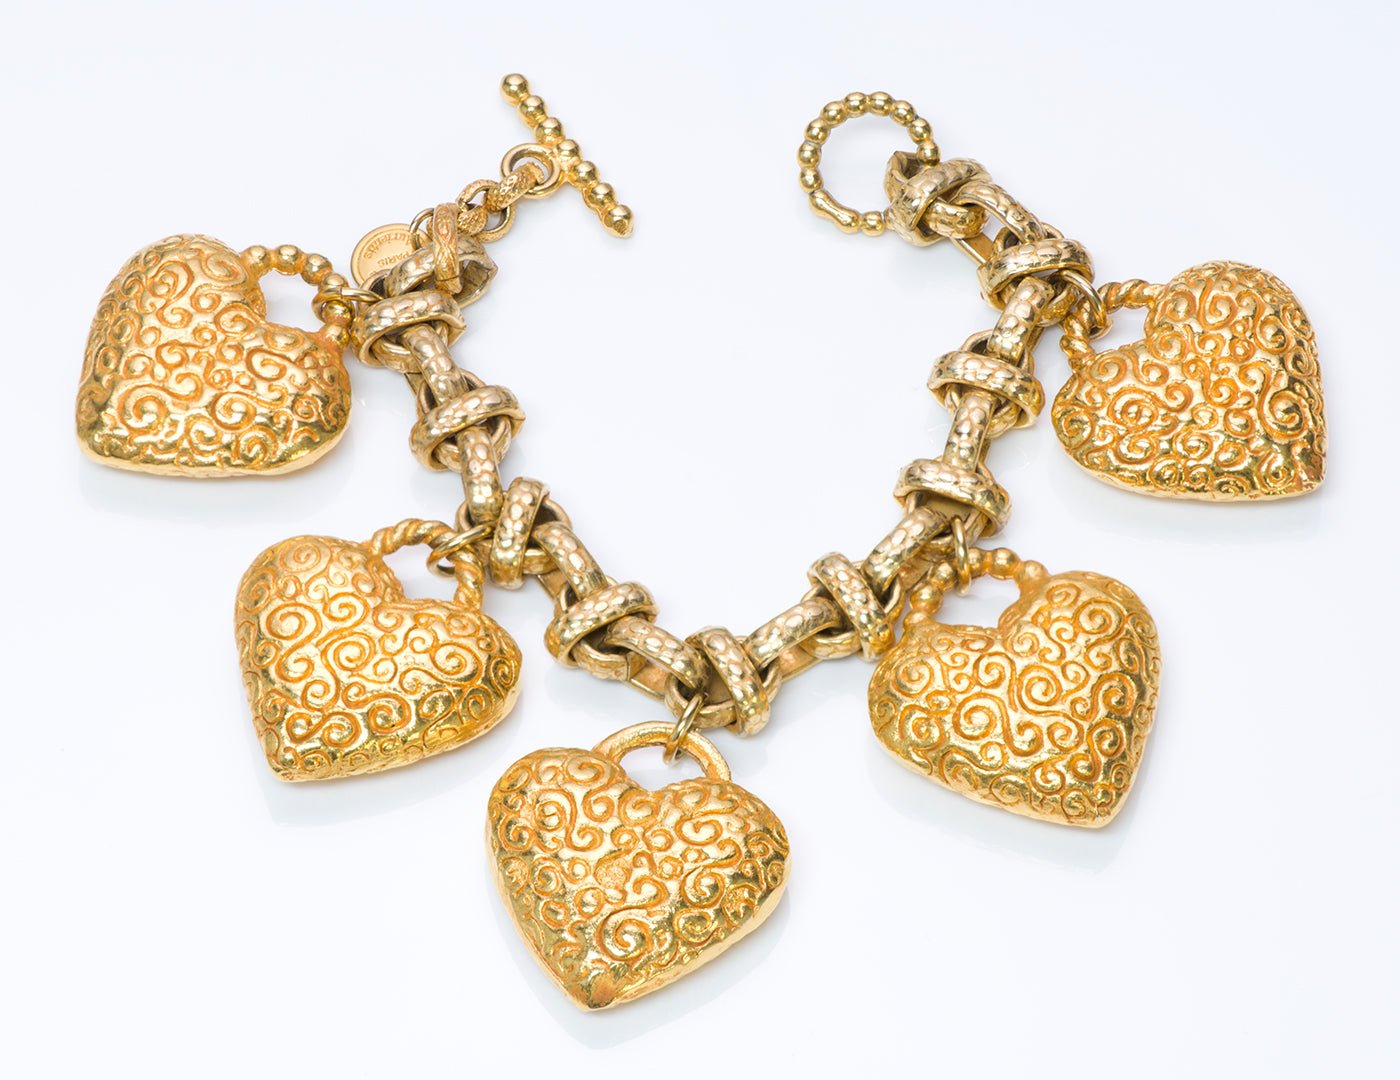 Dominique Aurientis Paris Heart Charm Bracelet